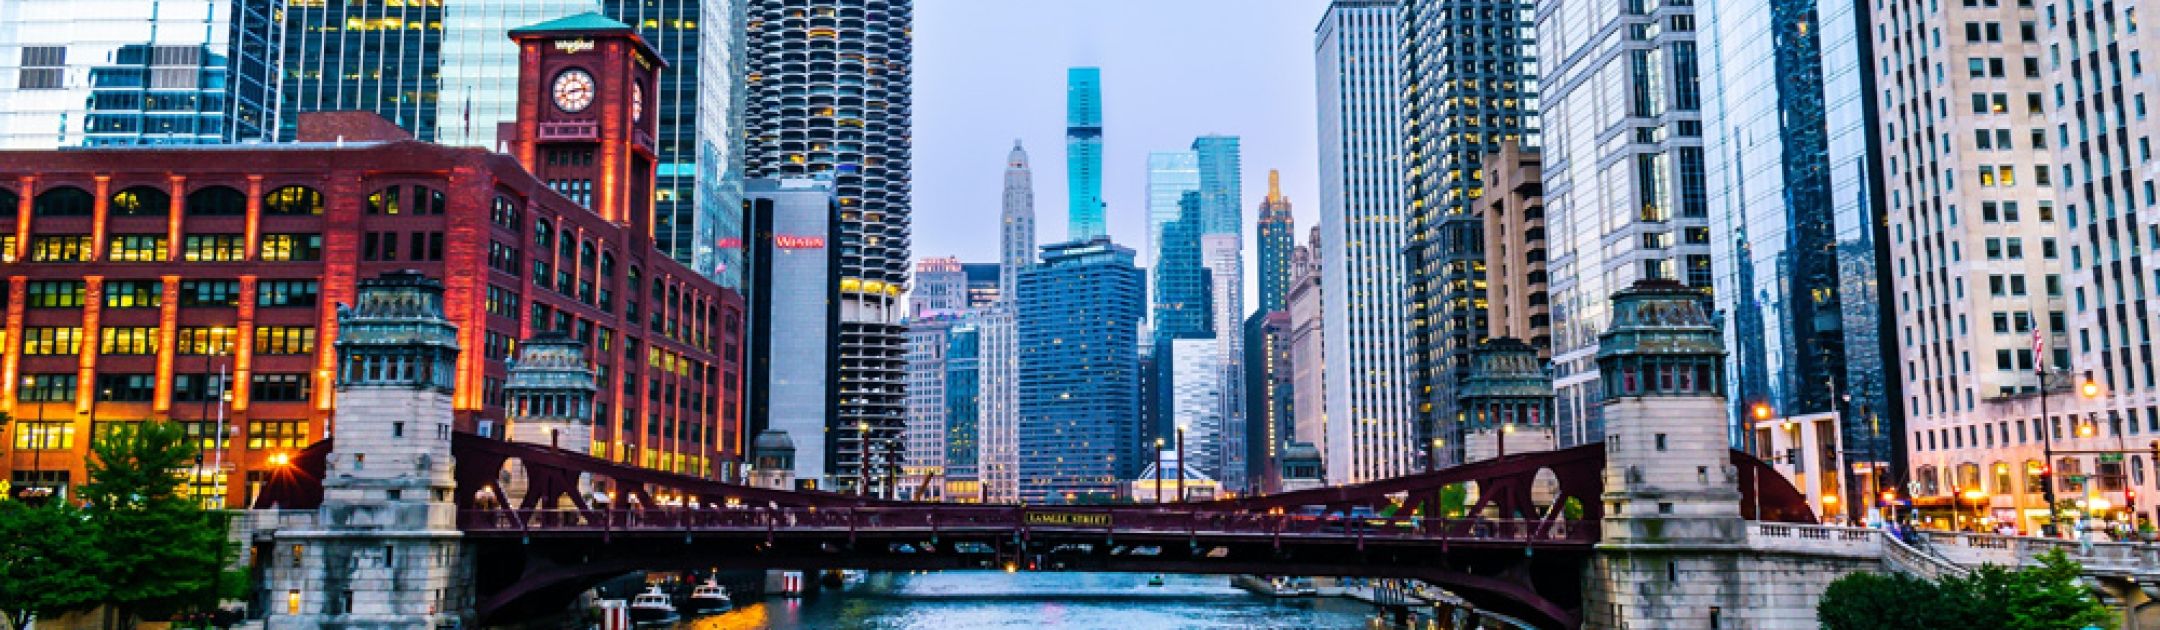 Chicago scene